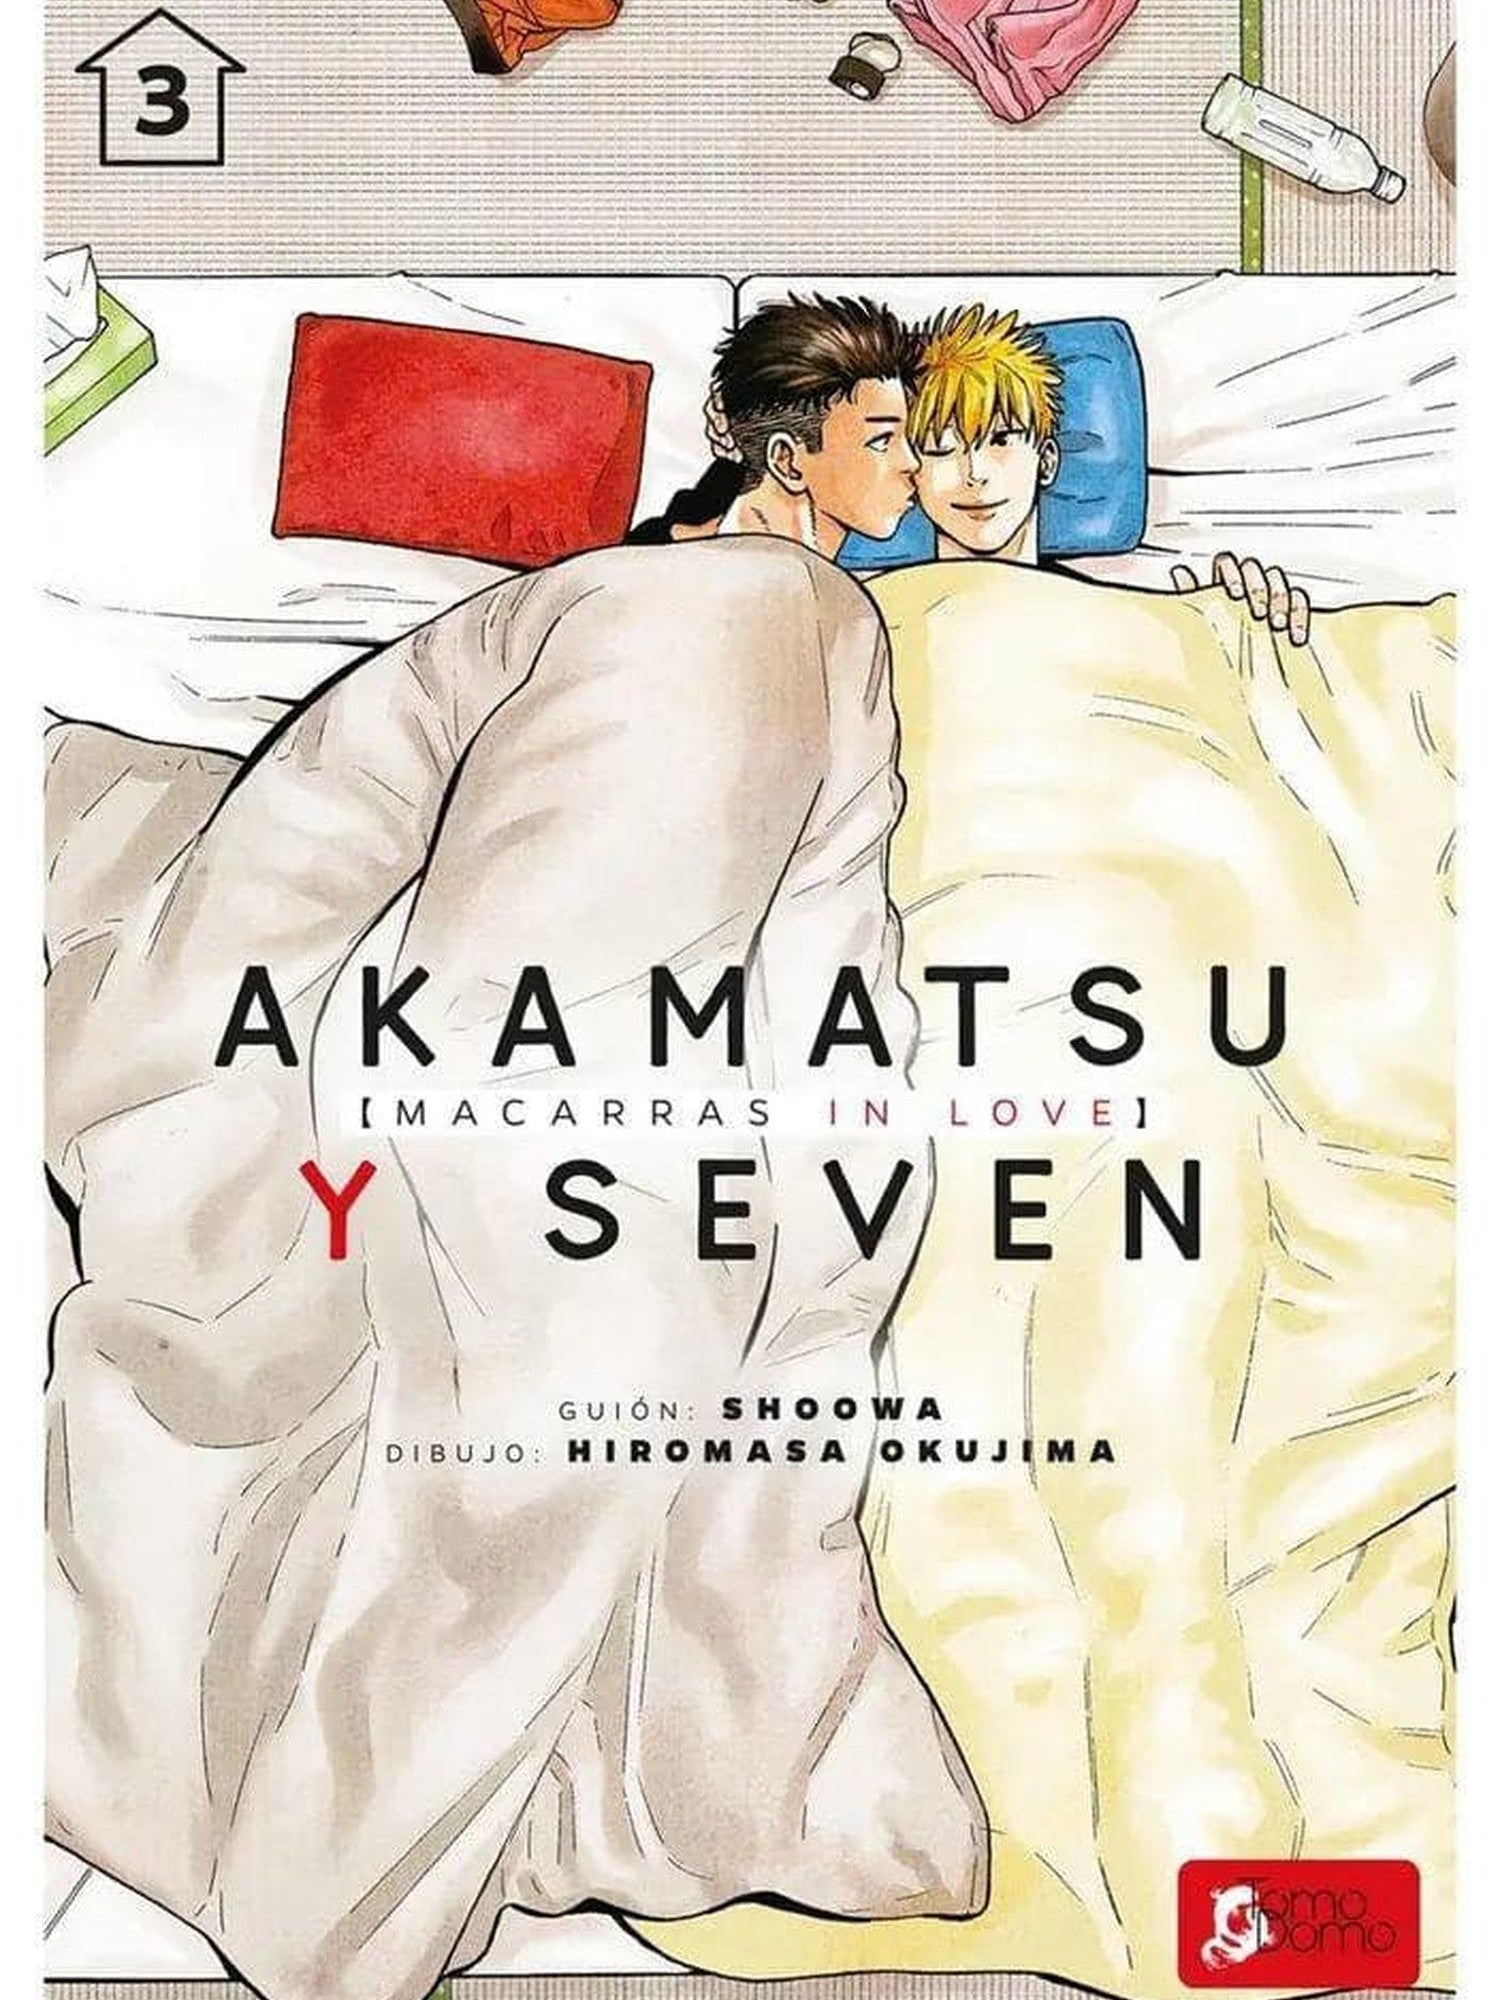 Akamatsu y Seven [Macarras In Love] Vol. 3 Tomodomo ENcuadrocomics